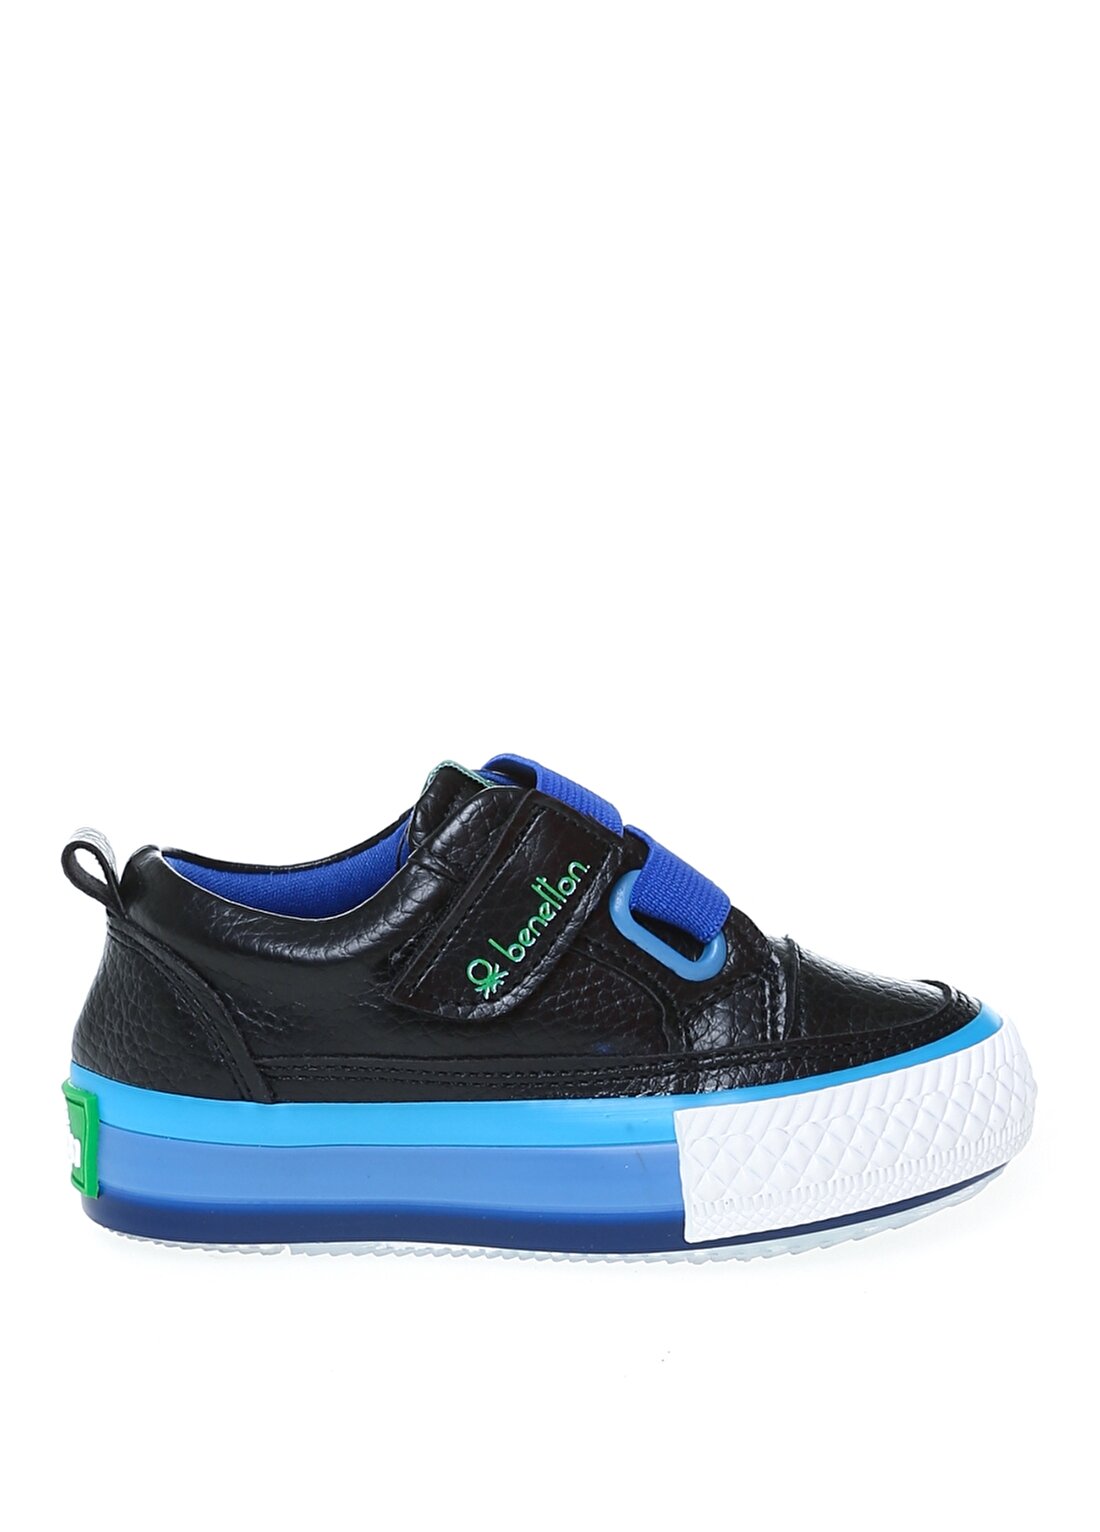 Benetton BN-30445 Siyah - Mavi Bebek Yürüyüş Ayakkabısı